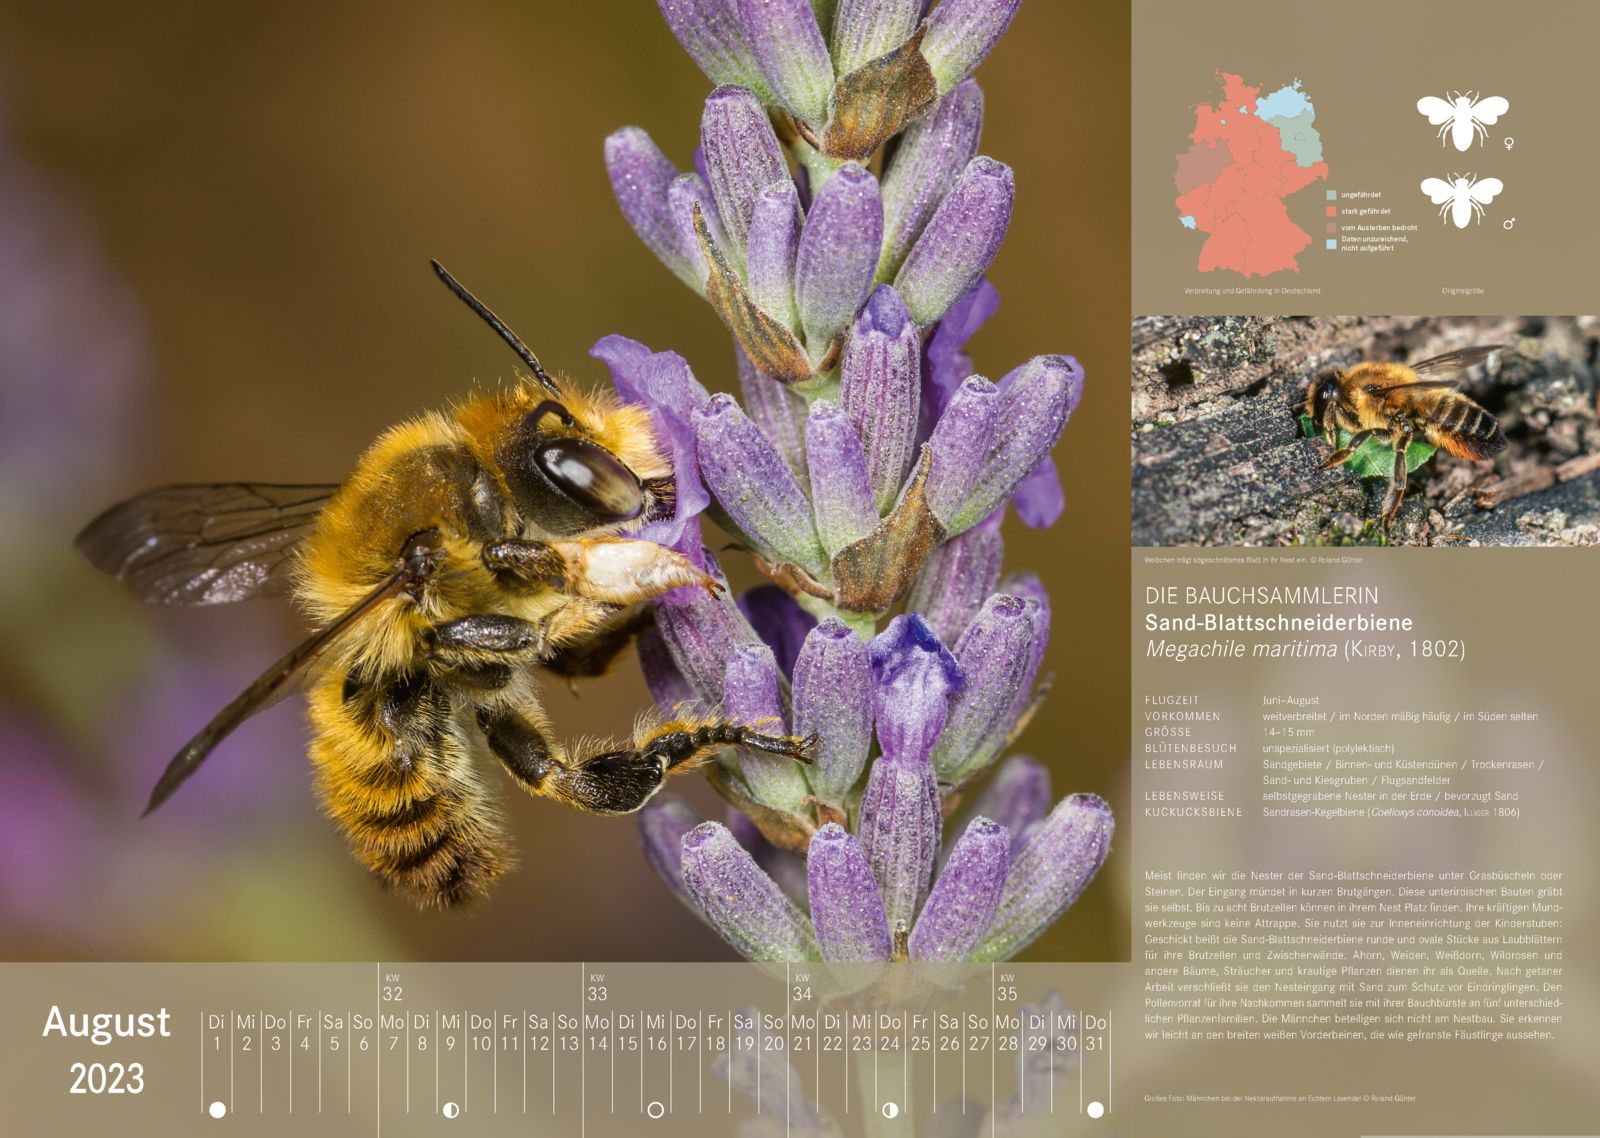 Wildbienenkalender 2023: August